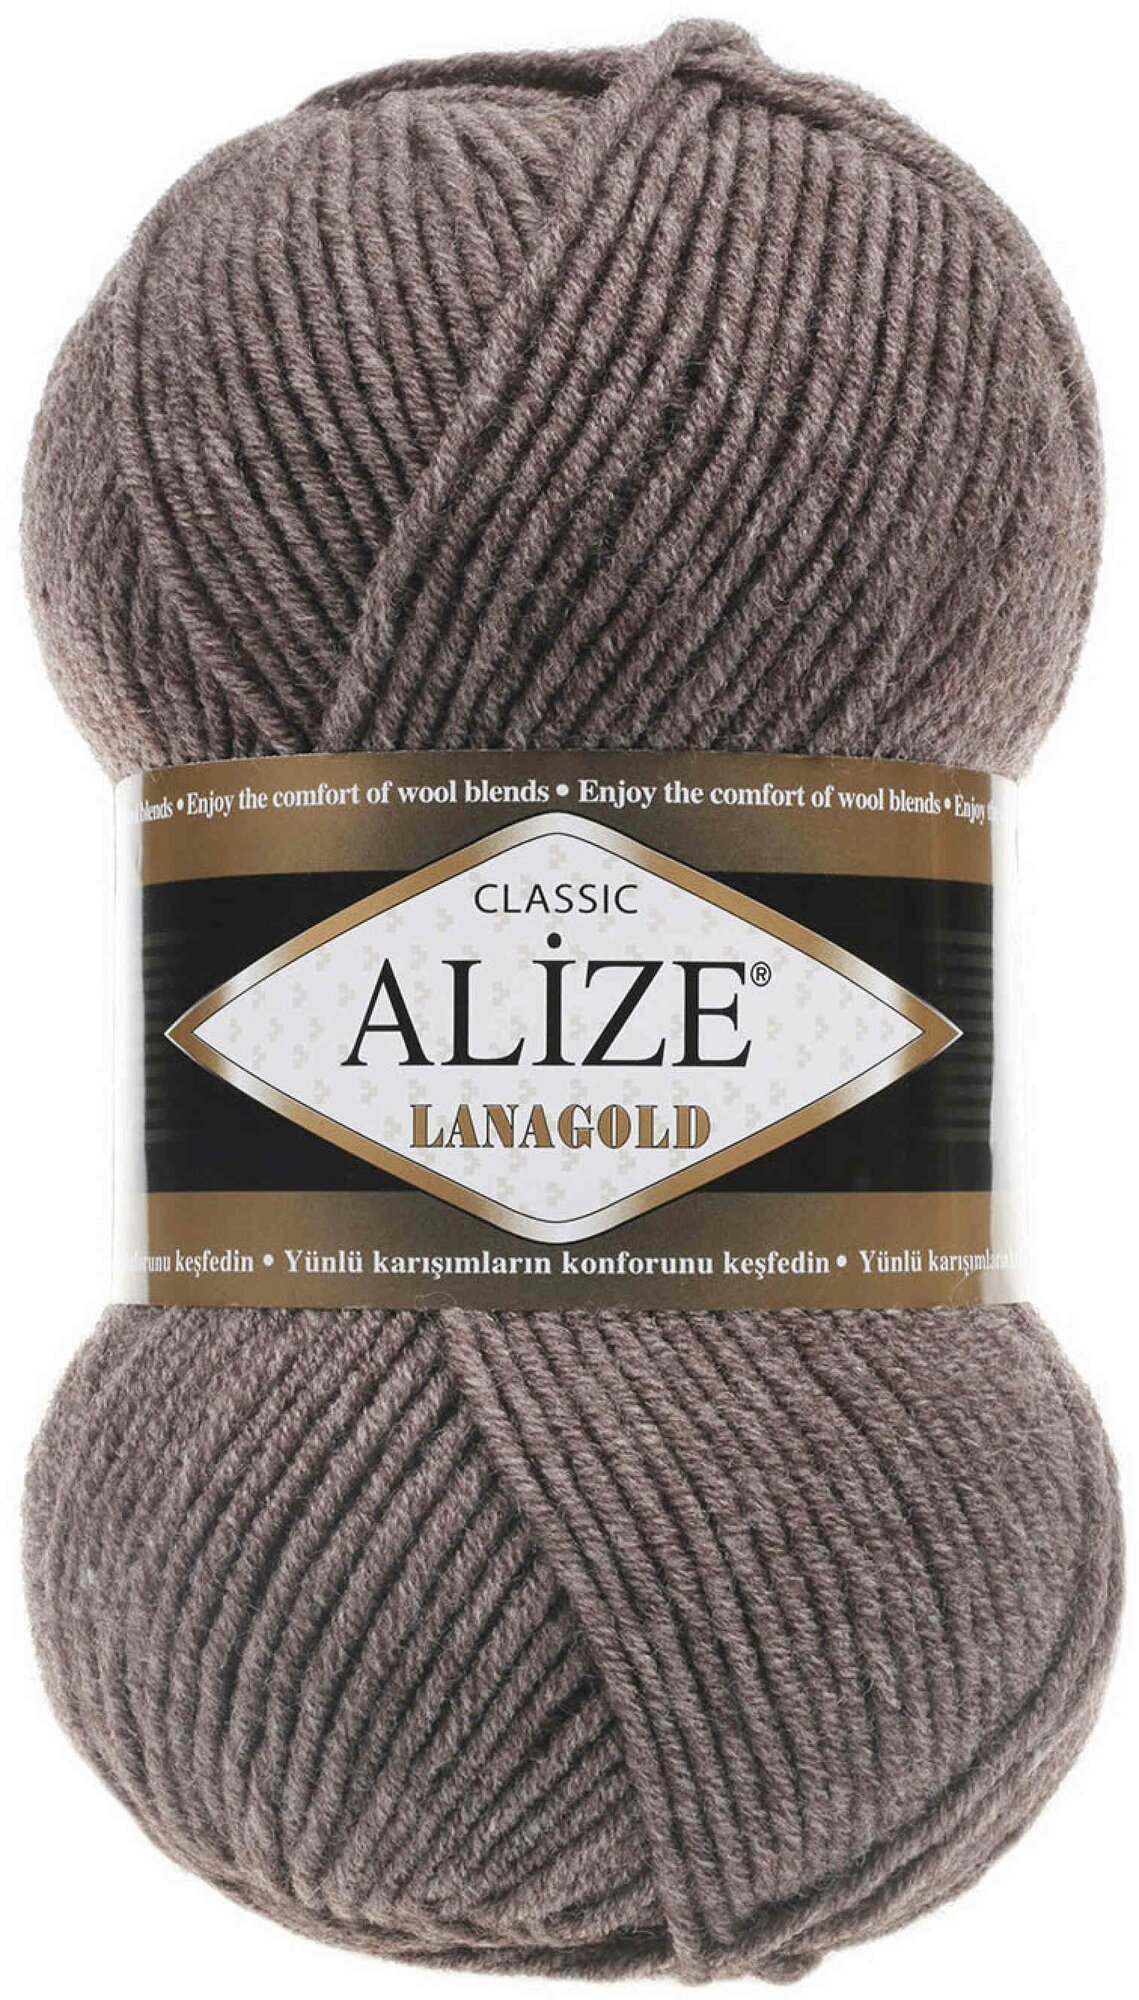 Пряжа Alize Lanagold светло-коричневый/меланж (240), 51%акрил/49%шерсть, 240м, 100г, 1шт